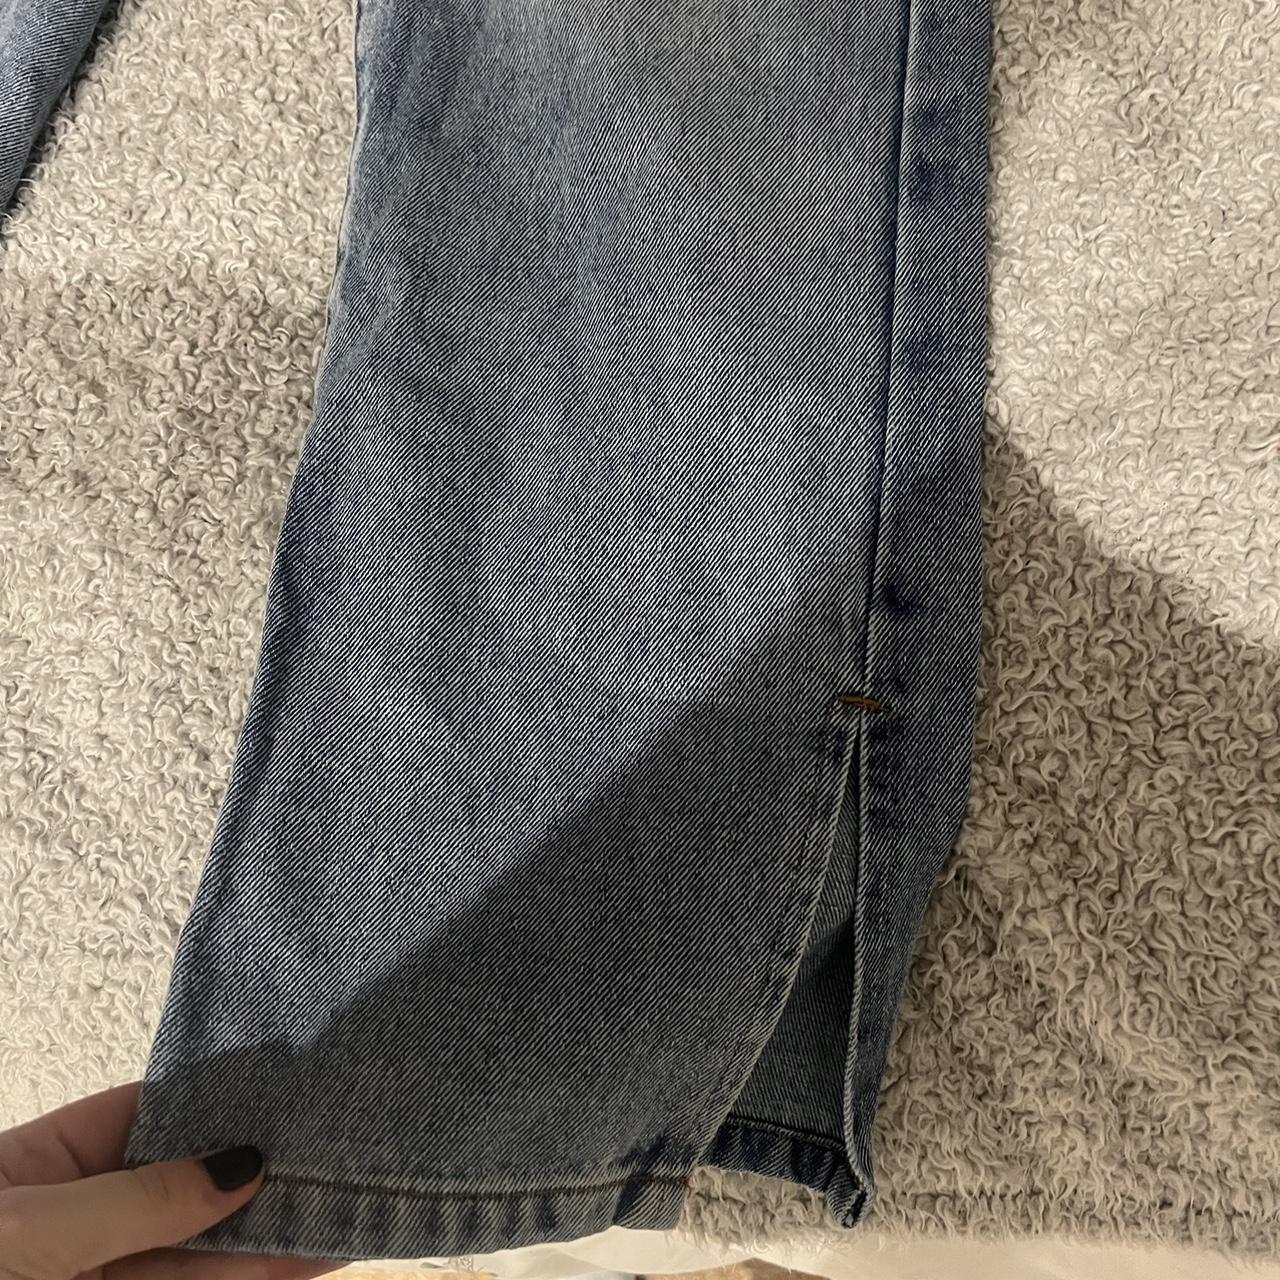 Rebellious fashion jeans - Depop